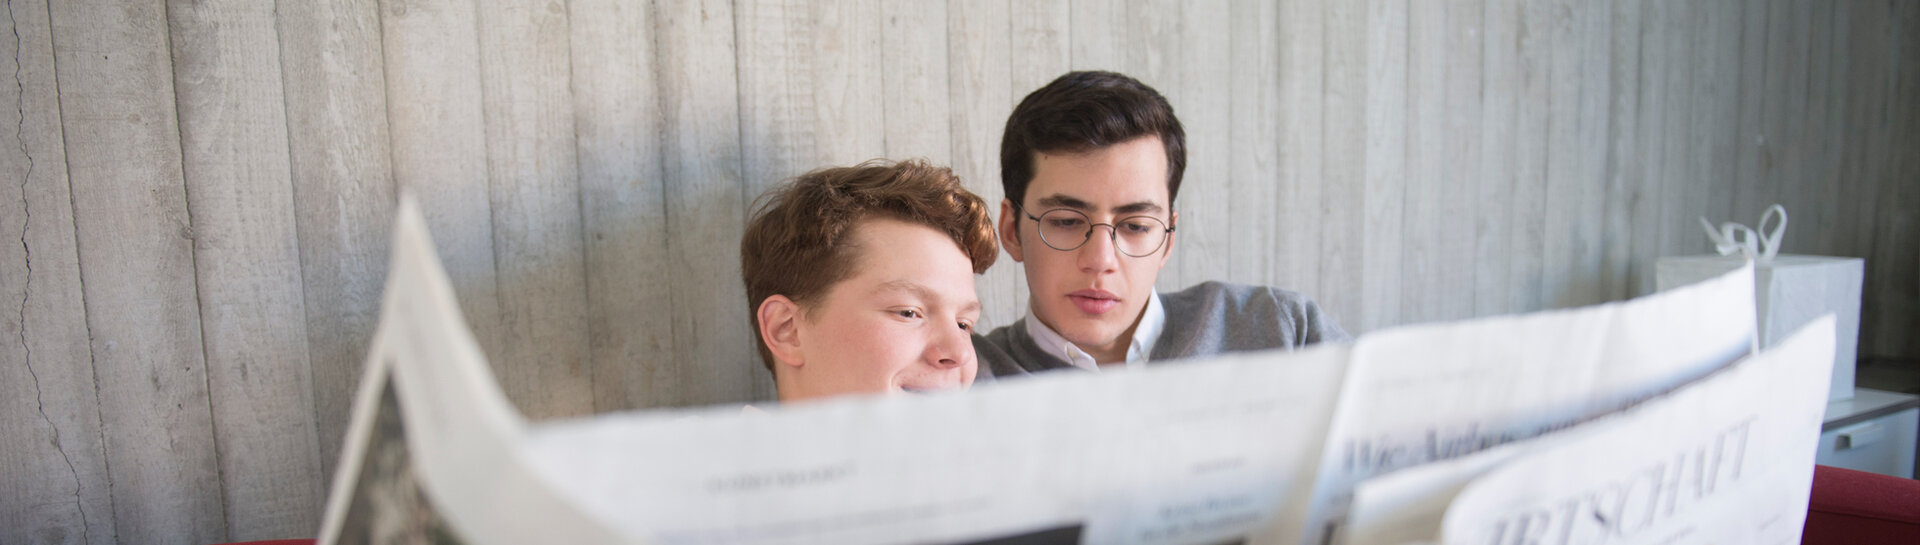 Headerbild: Zwei Jungen lesen Zeitung 